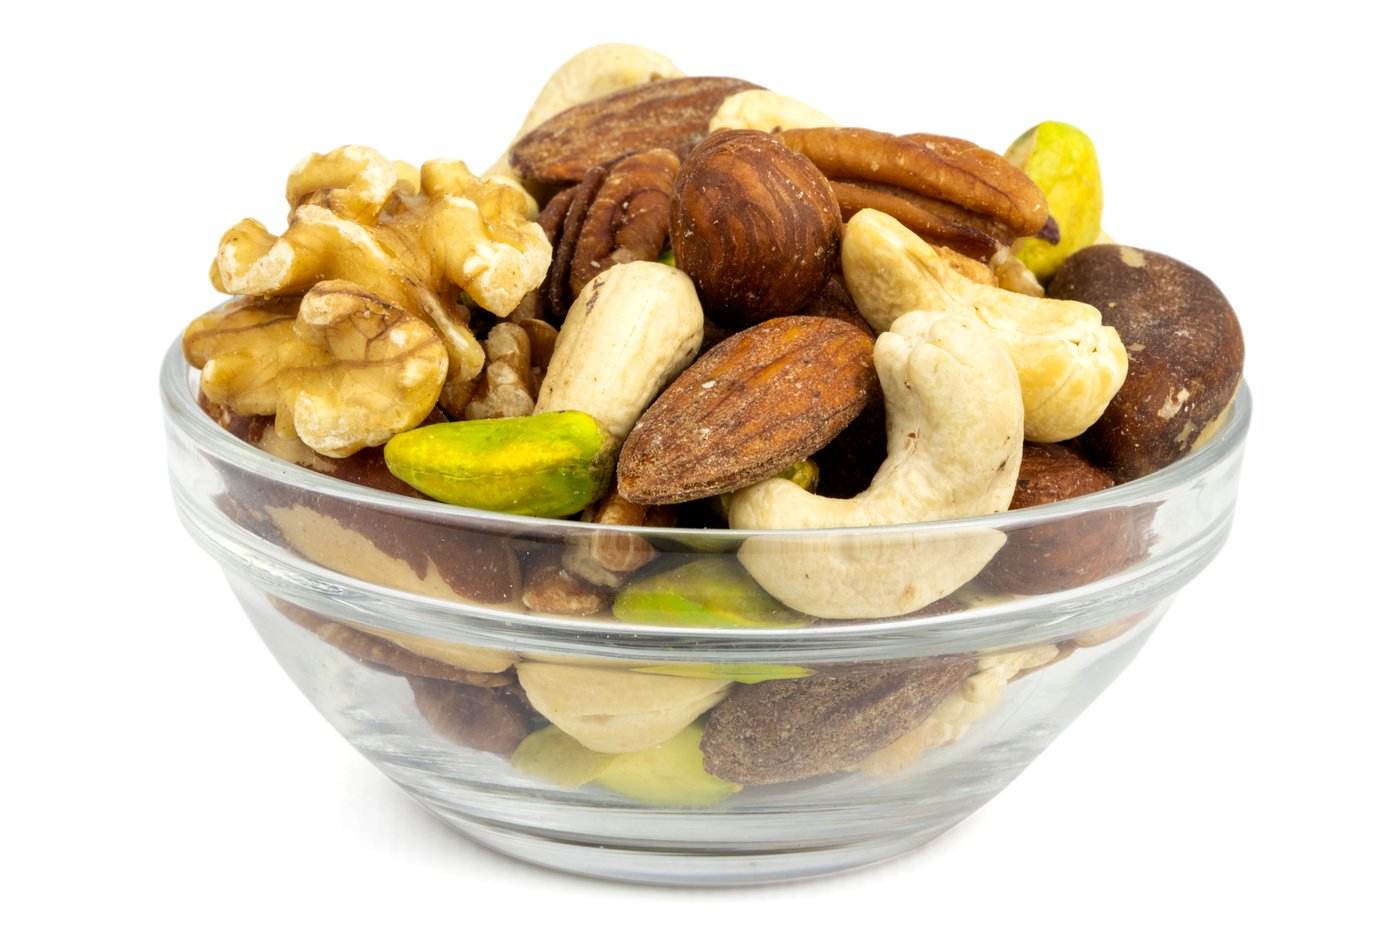 Organic Mixed Nuts (Raw, No Shell) image zoom